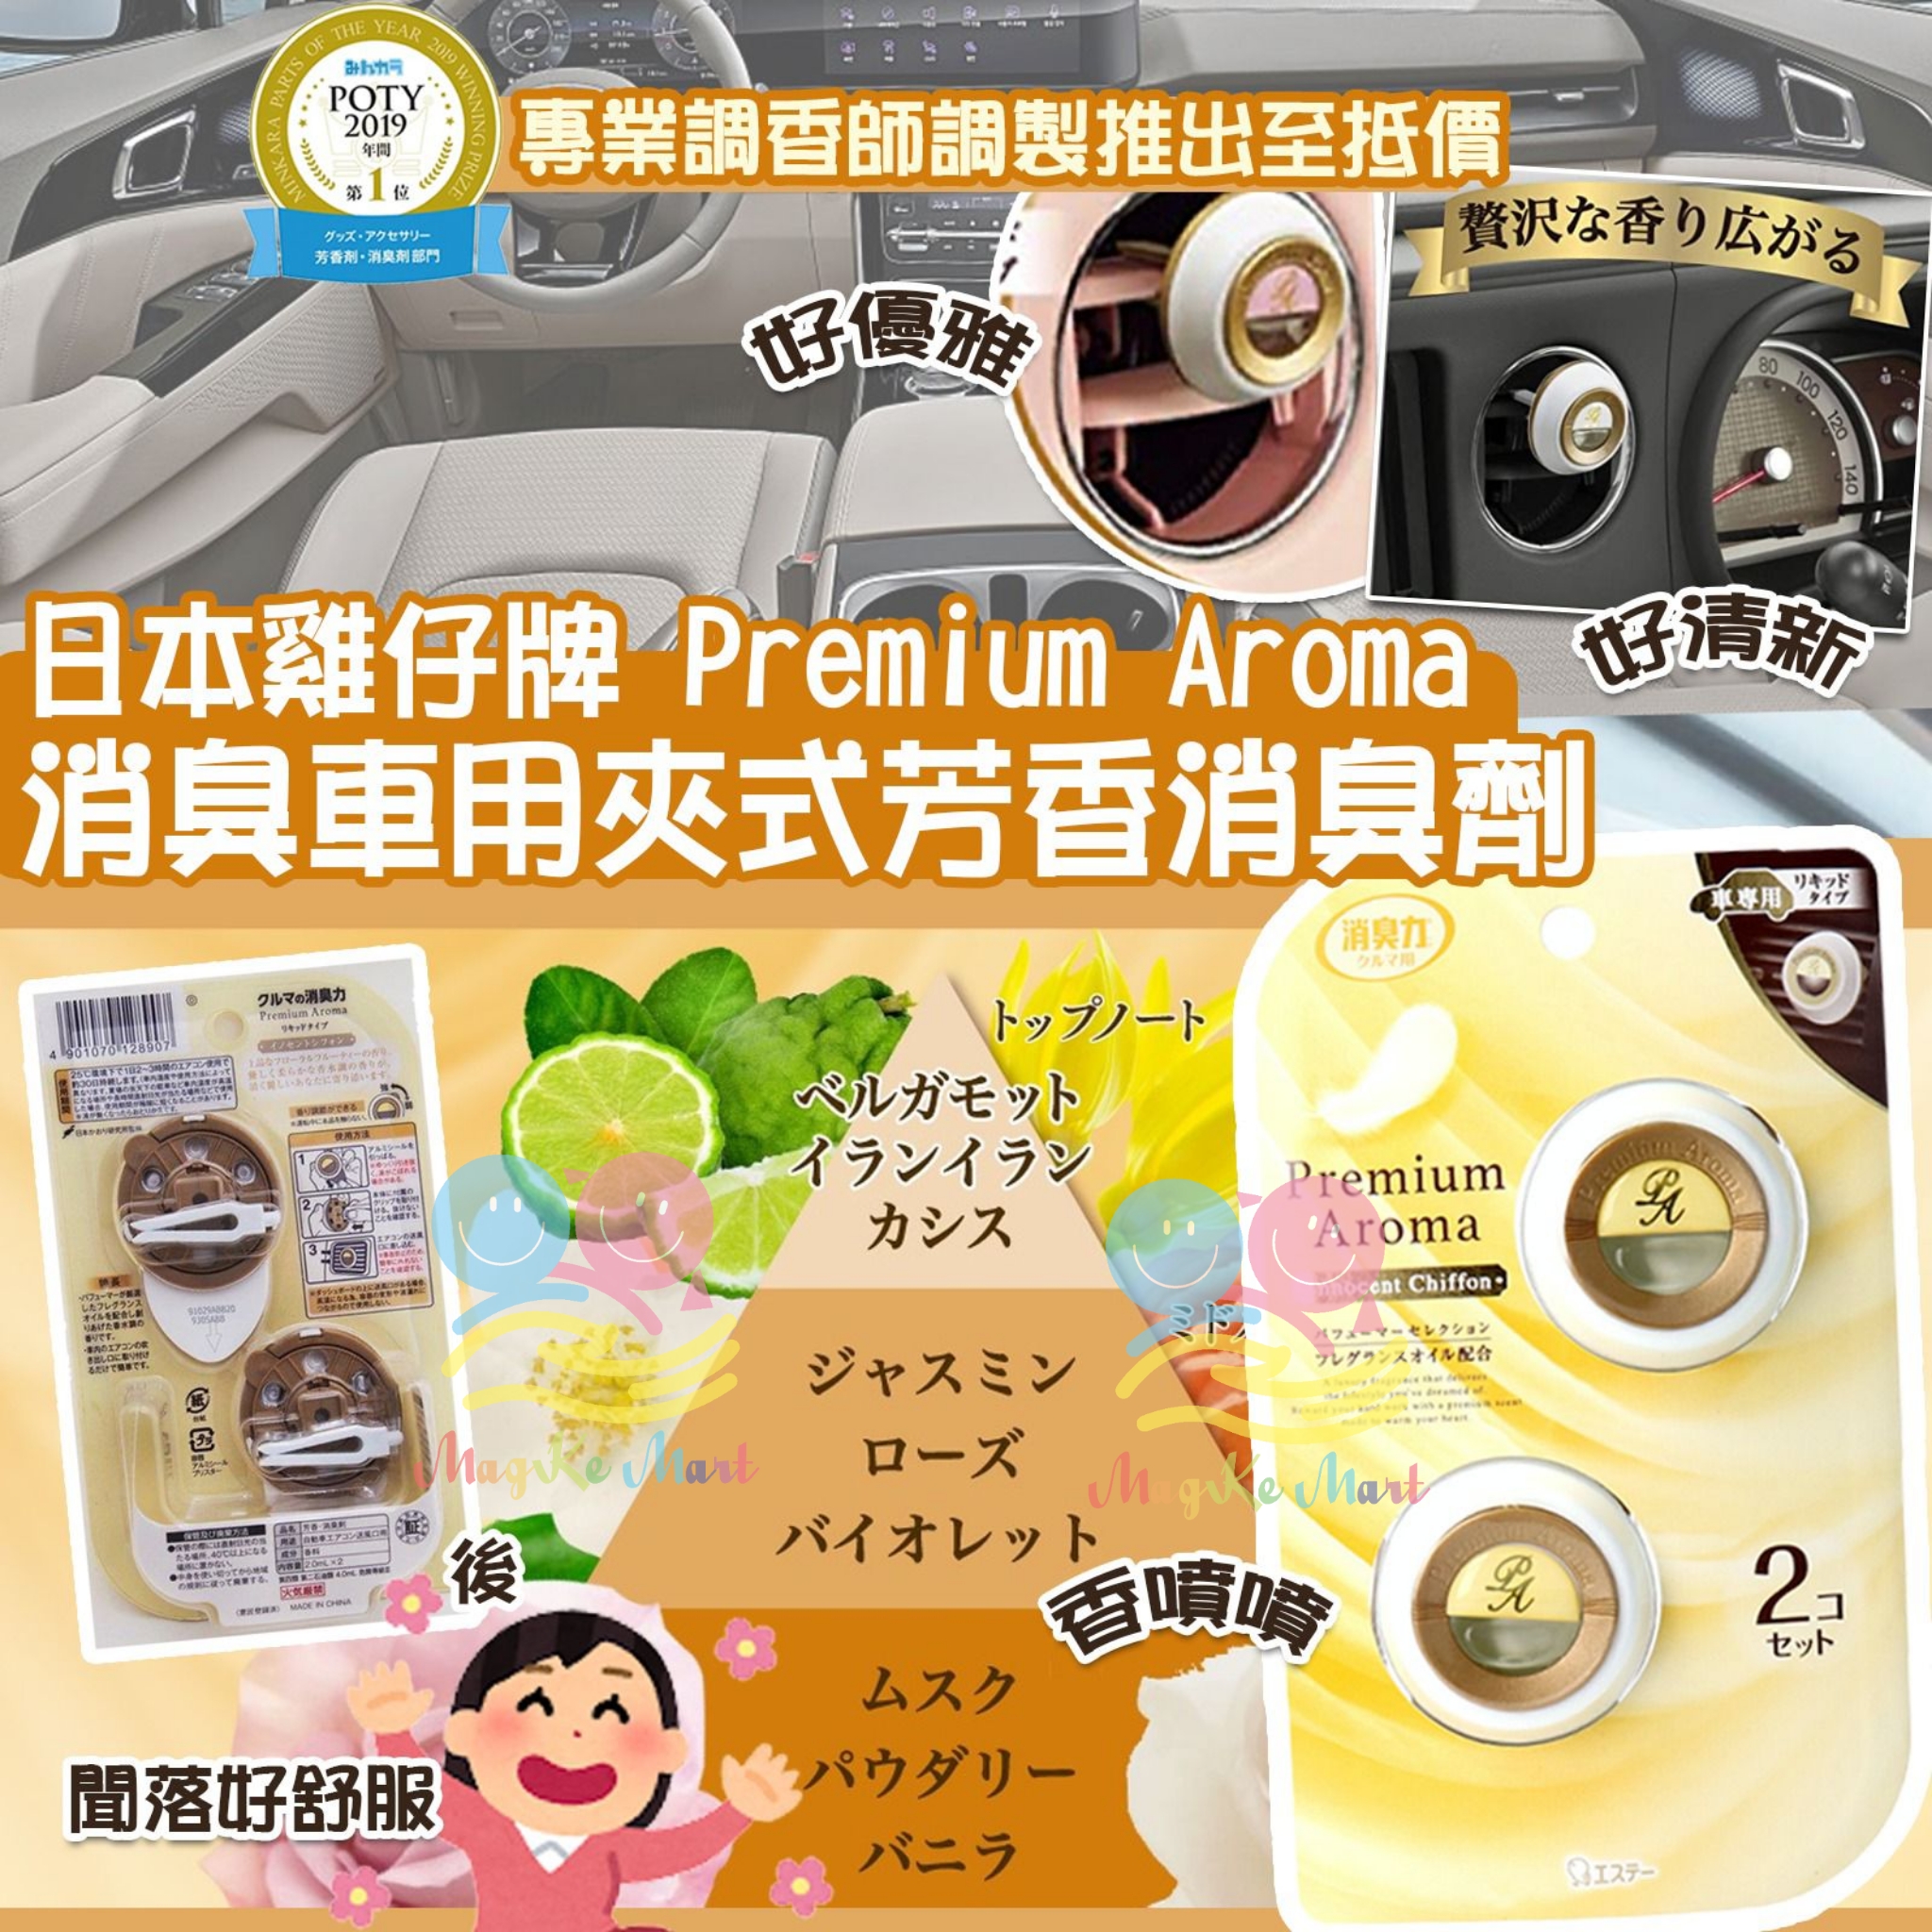 日本雞仔牌 Premium Aroma 消臭車用夾式芳香消臭劑(1件2入)